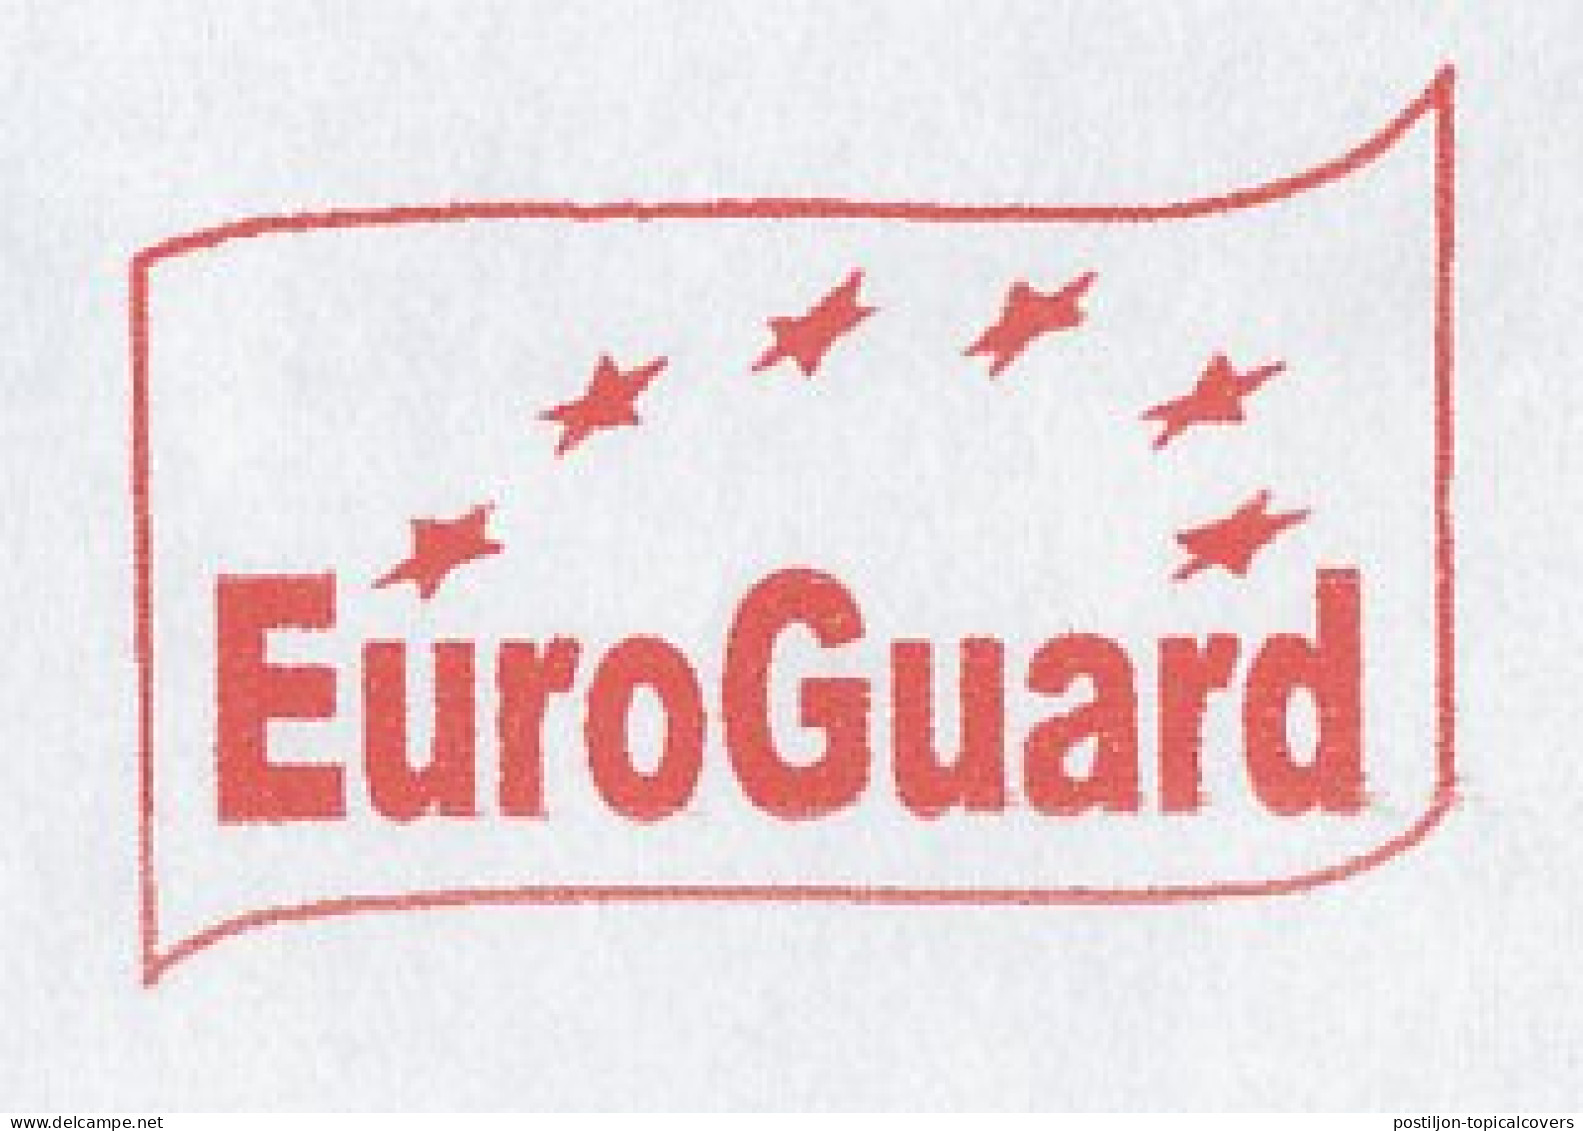 Meter Cover France 2002 EuroGard - Instituciones Europeas